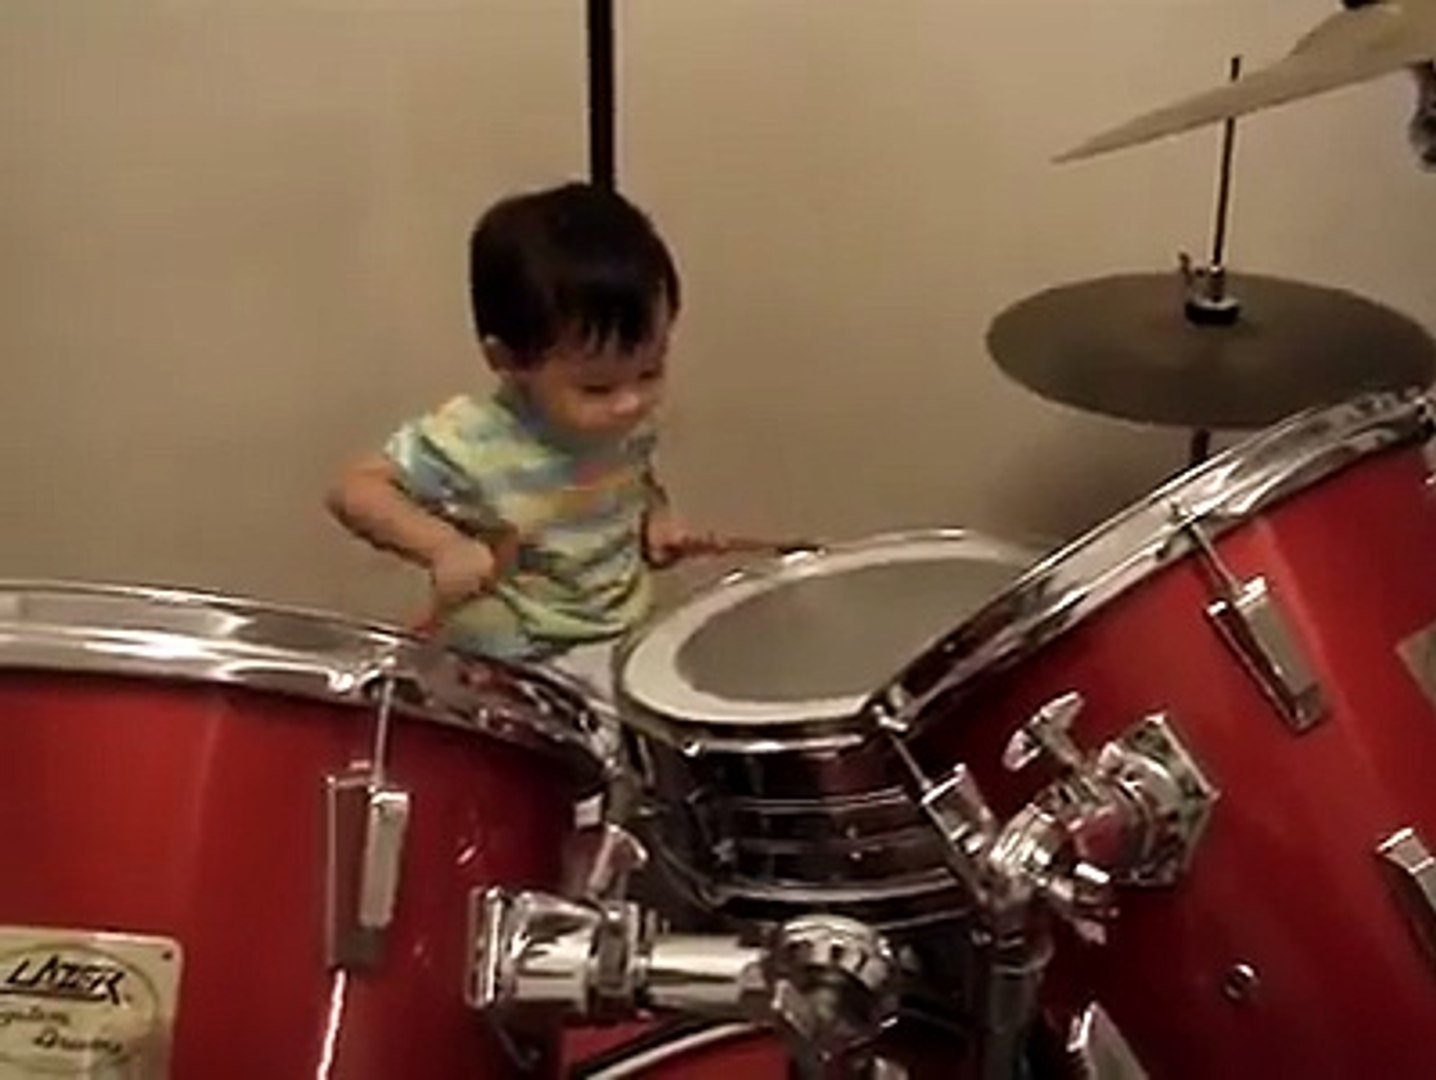 Questo bambino non ha nemmeno due anni: sentite come suona la batteria! -  Video Dailymotion